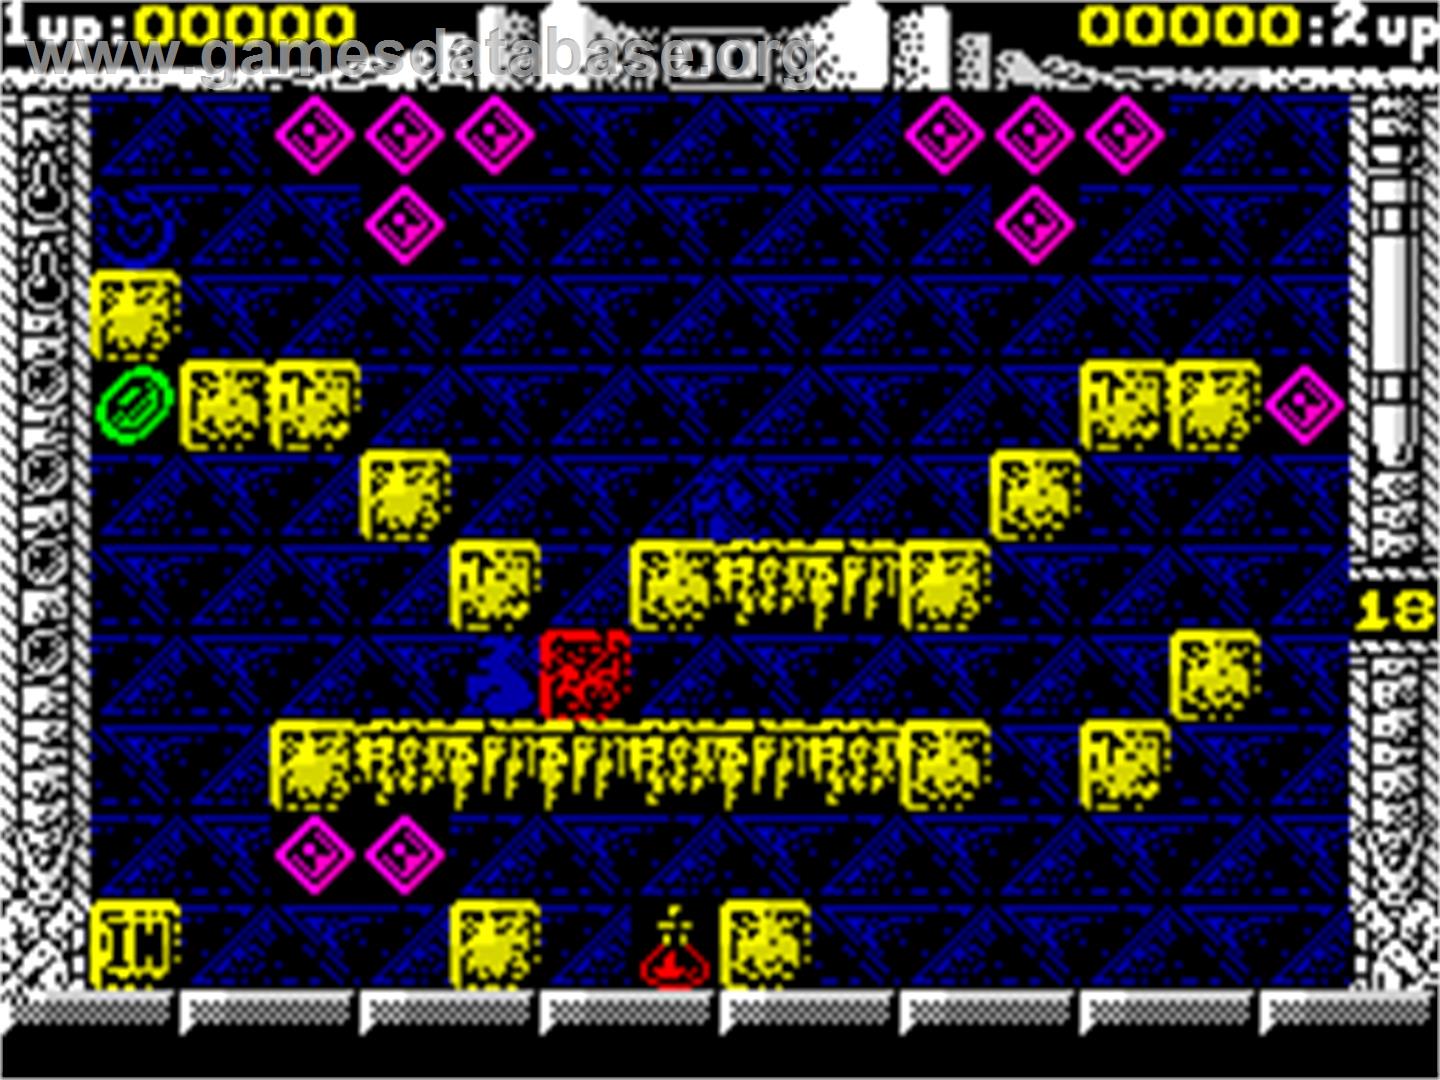 Spherical - Sinclair ZX Spectrum - Artwork - In Game